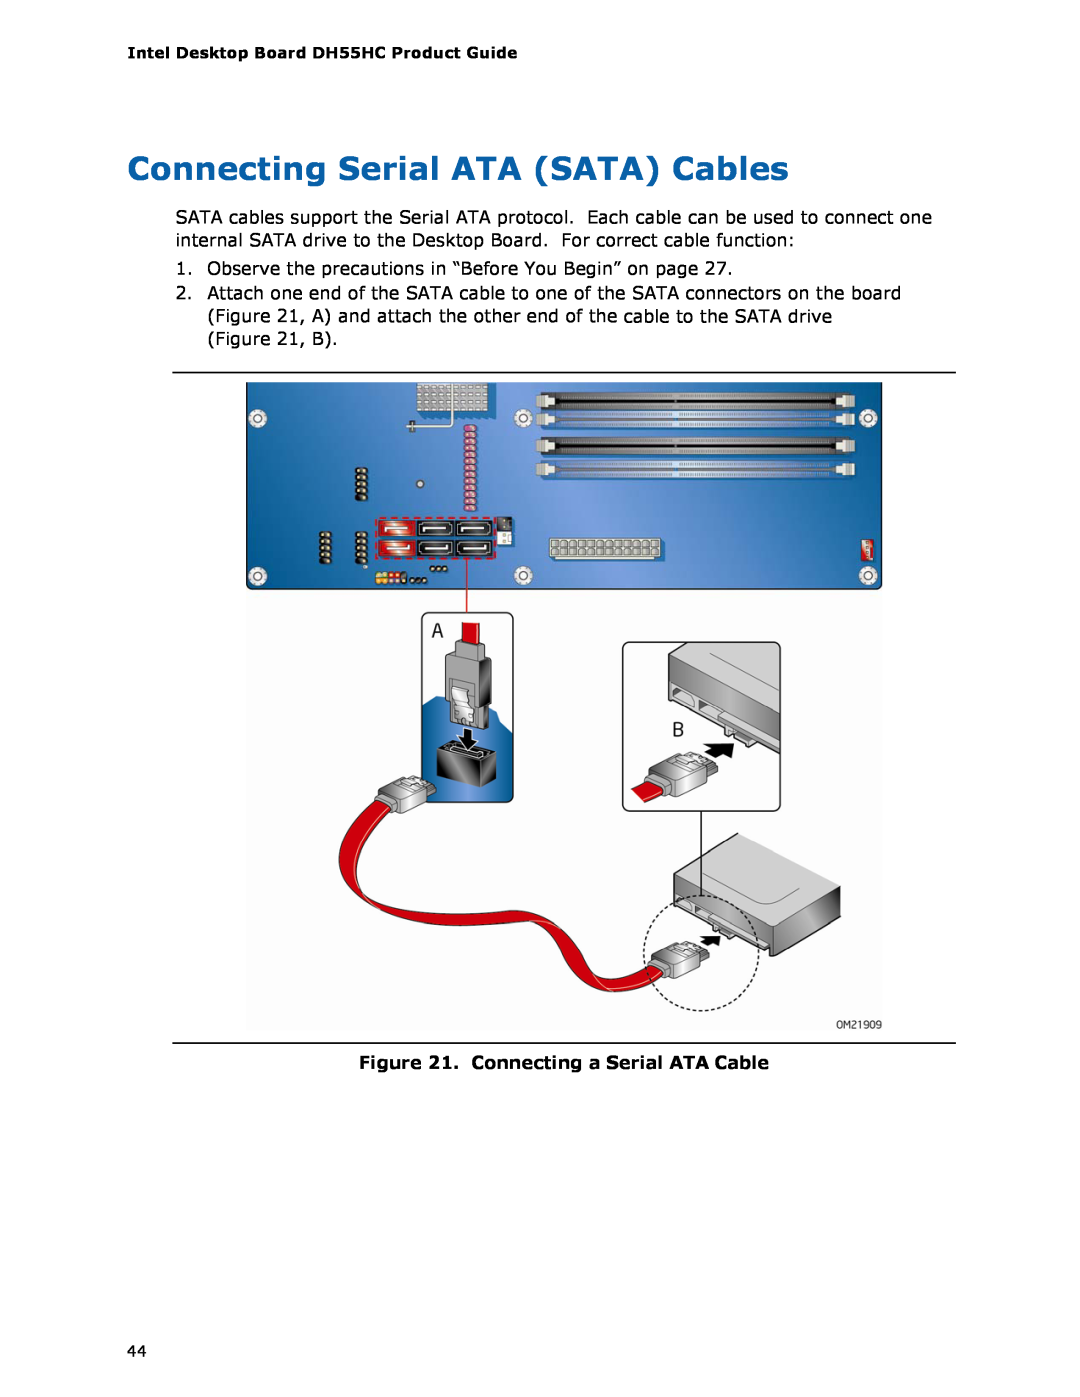 Intel BOXDH55HC manual Connecting Serial ATA SATA Cables, Connecting a Serial ATA Cable 